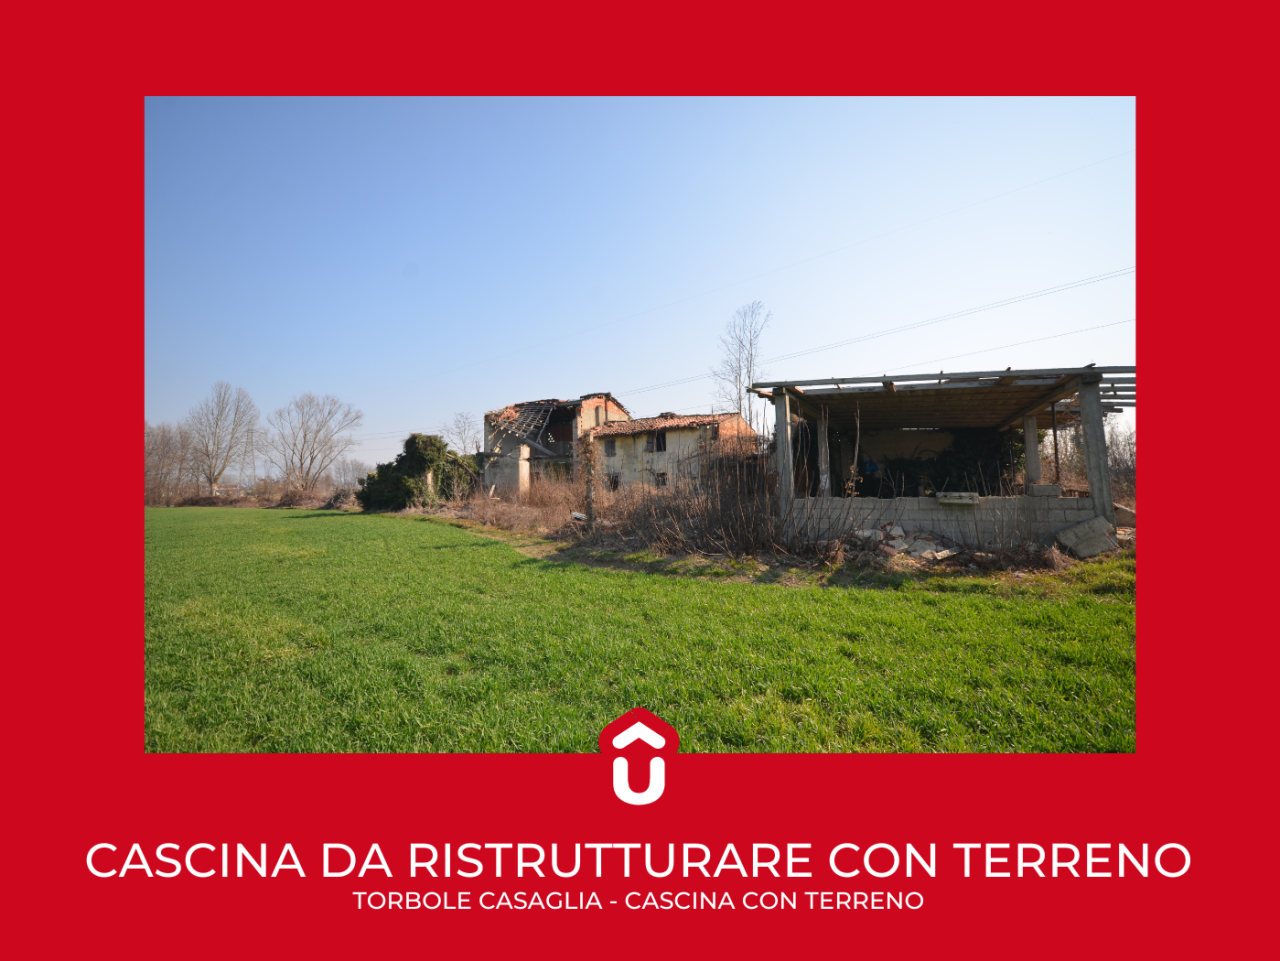 Rustico / Casale in vendita a Torbole Casaglia, 1 locali, prezzo € 400.000 | PortaleAgenzieImmobiliari.it